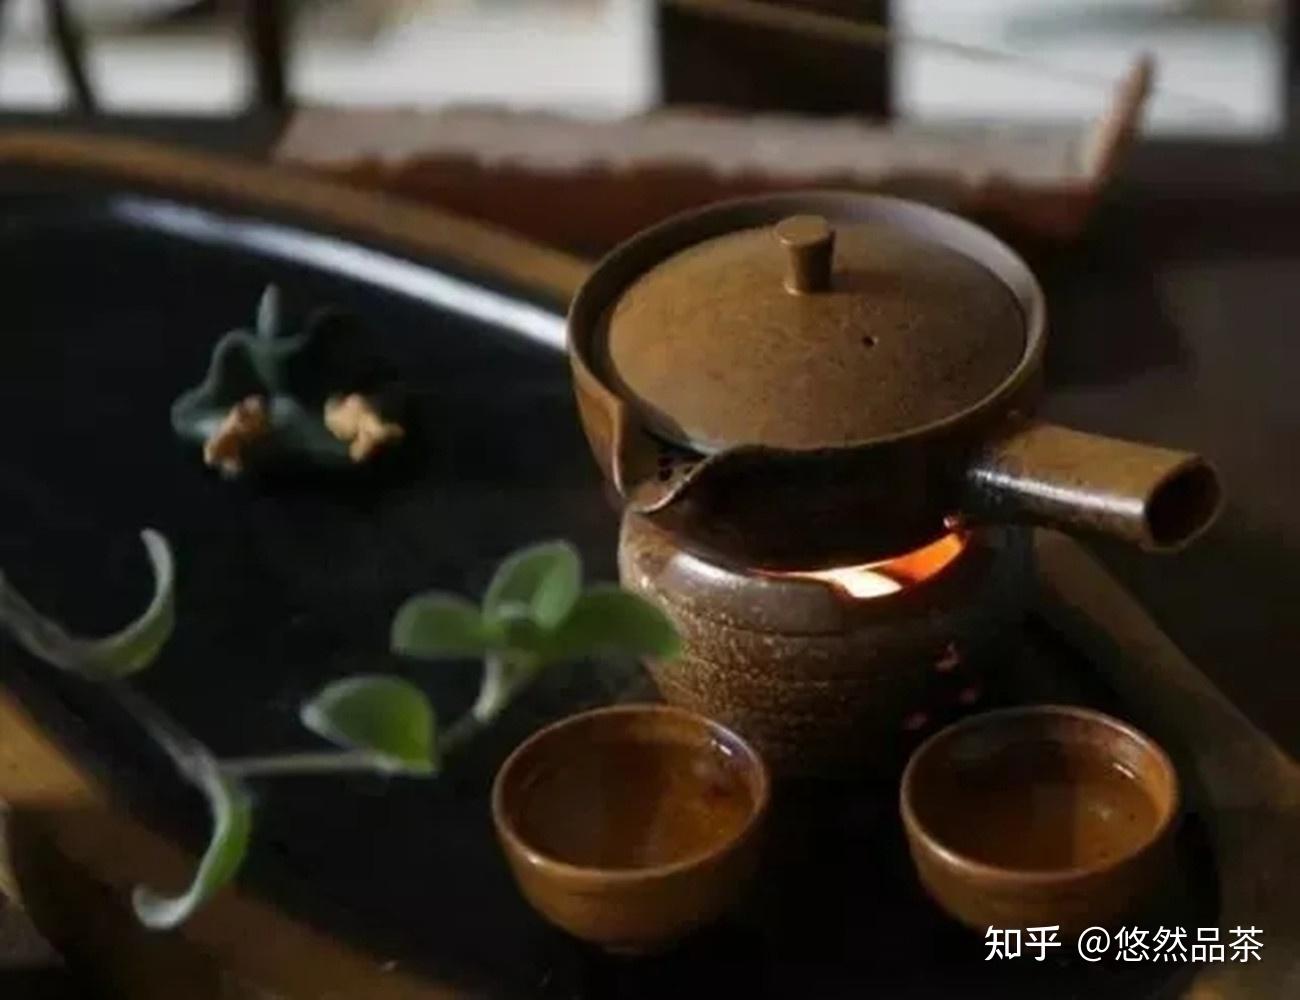 【晒茶记】品茶样：祁红香螺（2017）[润思]-茶语网,当代茶文化推广者